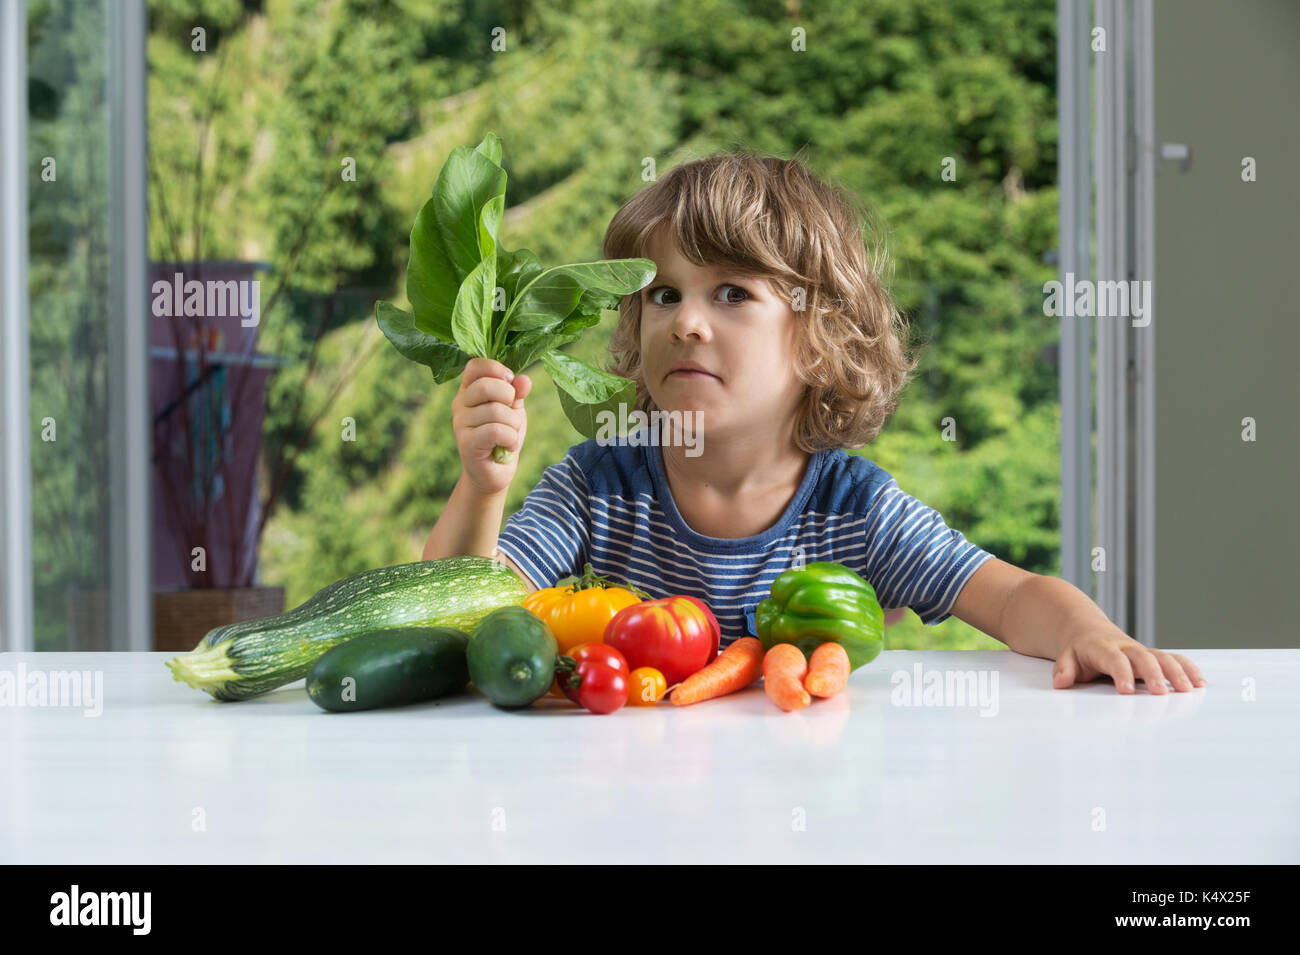 Adorable petit garçon assis à la table, exprimant des émotions contradictoires au repas de légumes, de mauvaises habitudes alimentaires, la nutrition et la saine alimentation concept Banque D'Images